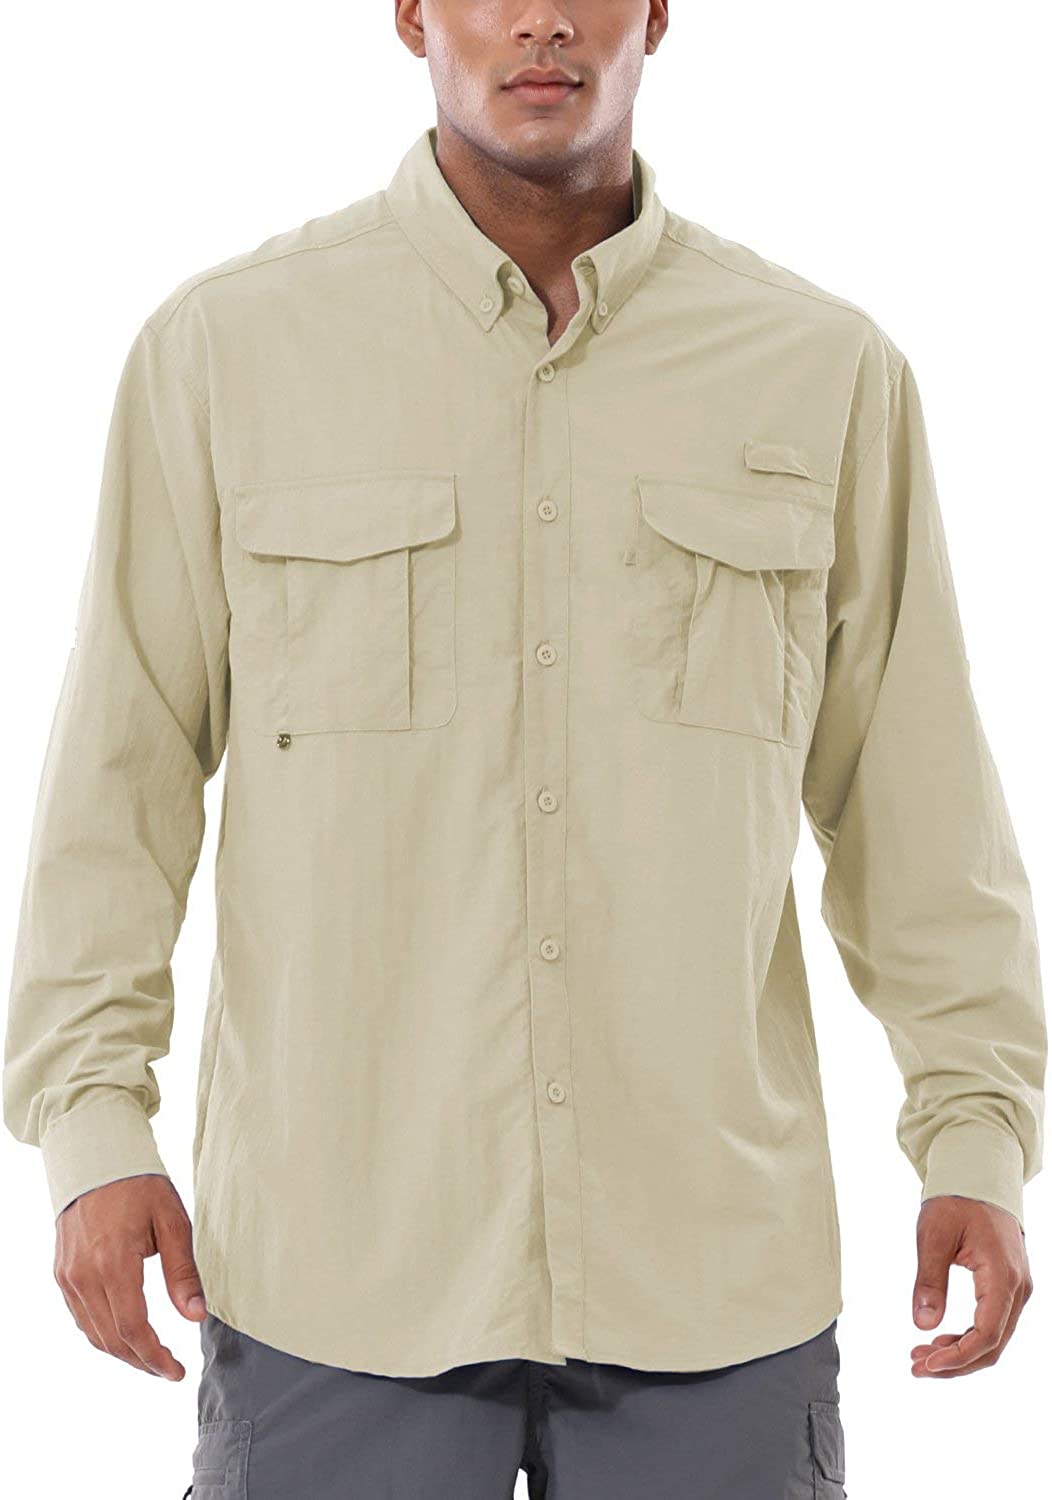 BALEAF Men's UPF 50+ Hiking Shirt Long Sleeve Shirt Outdoor Lightweight ...